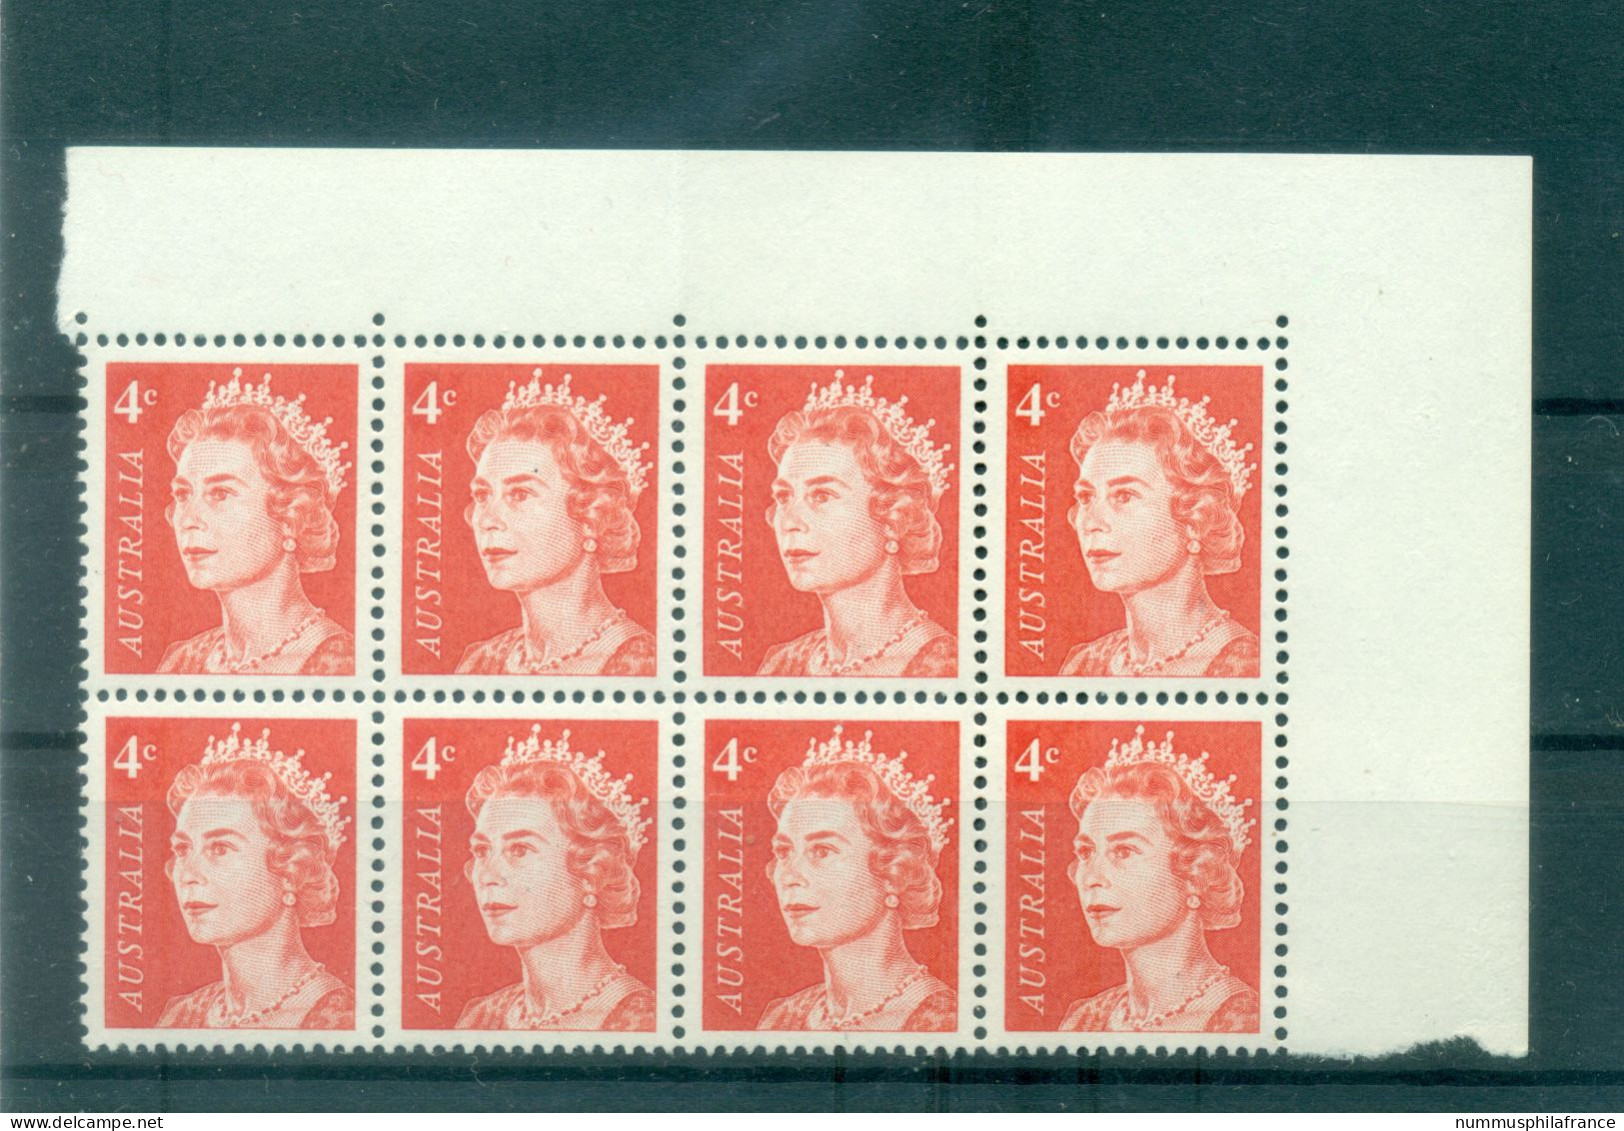 Australie 1966-70 - Y & T N. 322 - Série Courante (Michel N. 361 A) - Mint Stamps